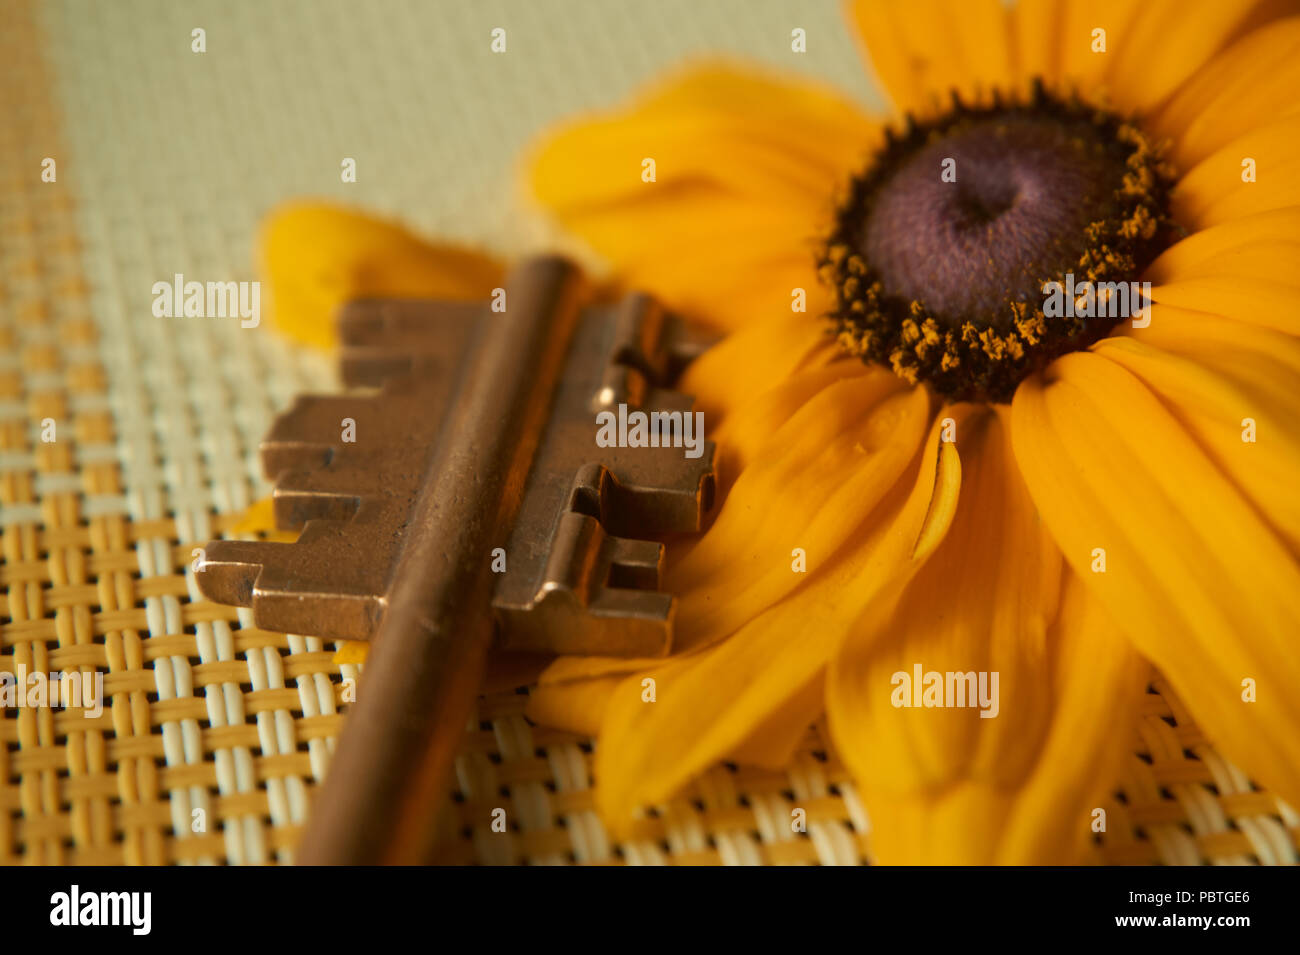 Ende einer Messing Sicherheitsschlüssel und gelbe Sonnenblumen liegen auf einem gewebt Bettwäsche textile in der Nähe zu konzeptionellen anzeigen. Selektiver Fokus und kostenlose Kopie. Stockfoto